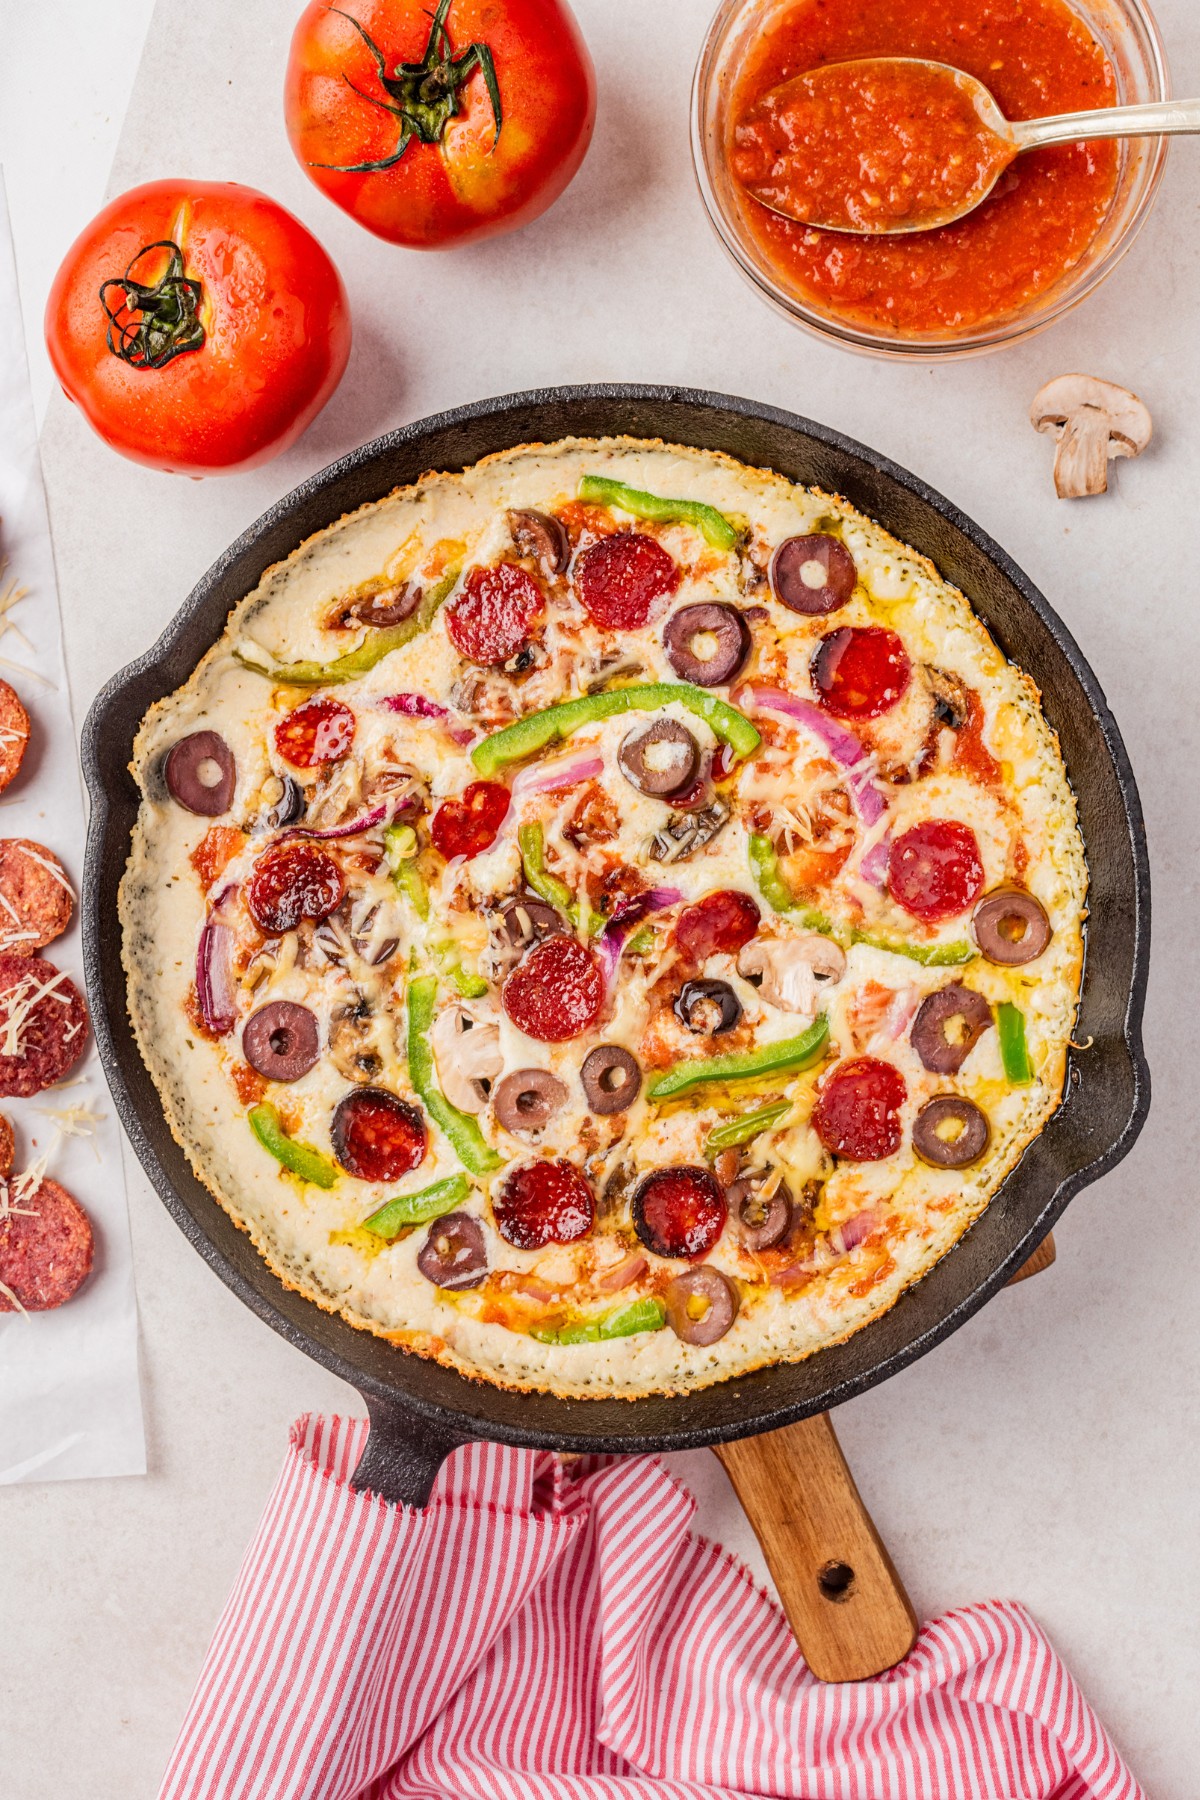 بالای سر پیتزا کتو بعد از پخت در یک تابه چدنی با حوله آشپزخانه دور دسته و سایر مواد روی میز قرار دهید.